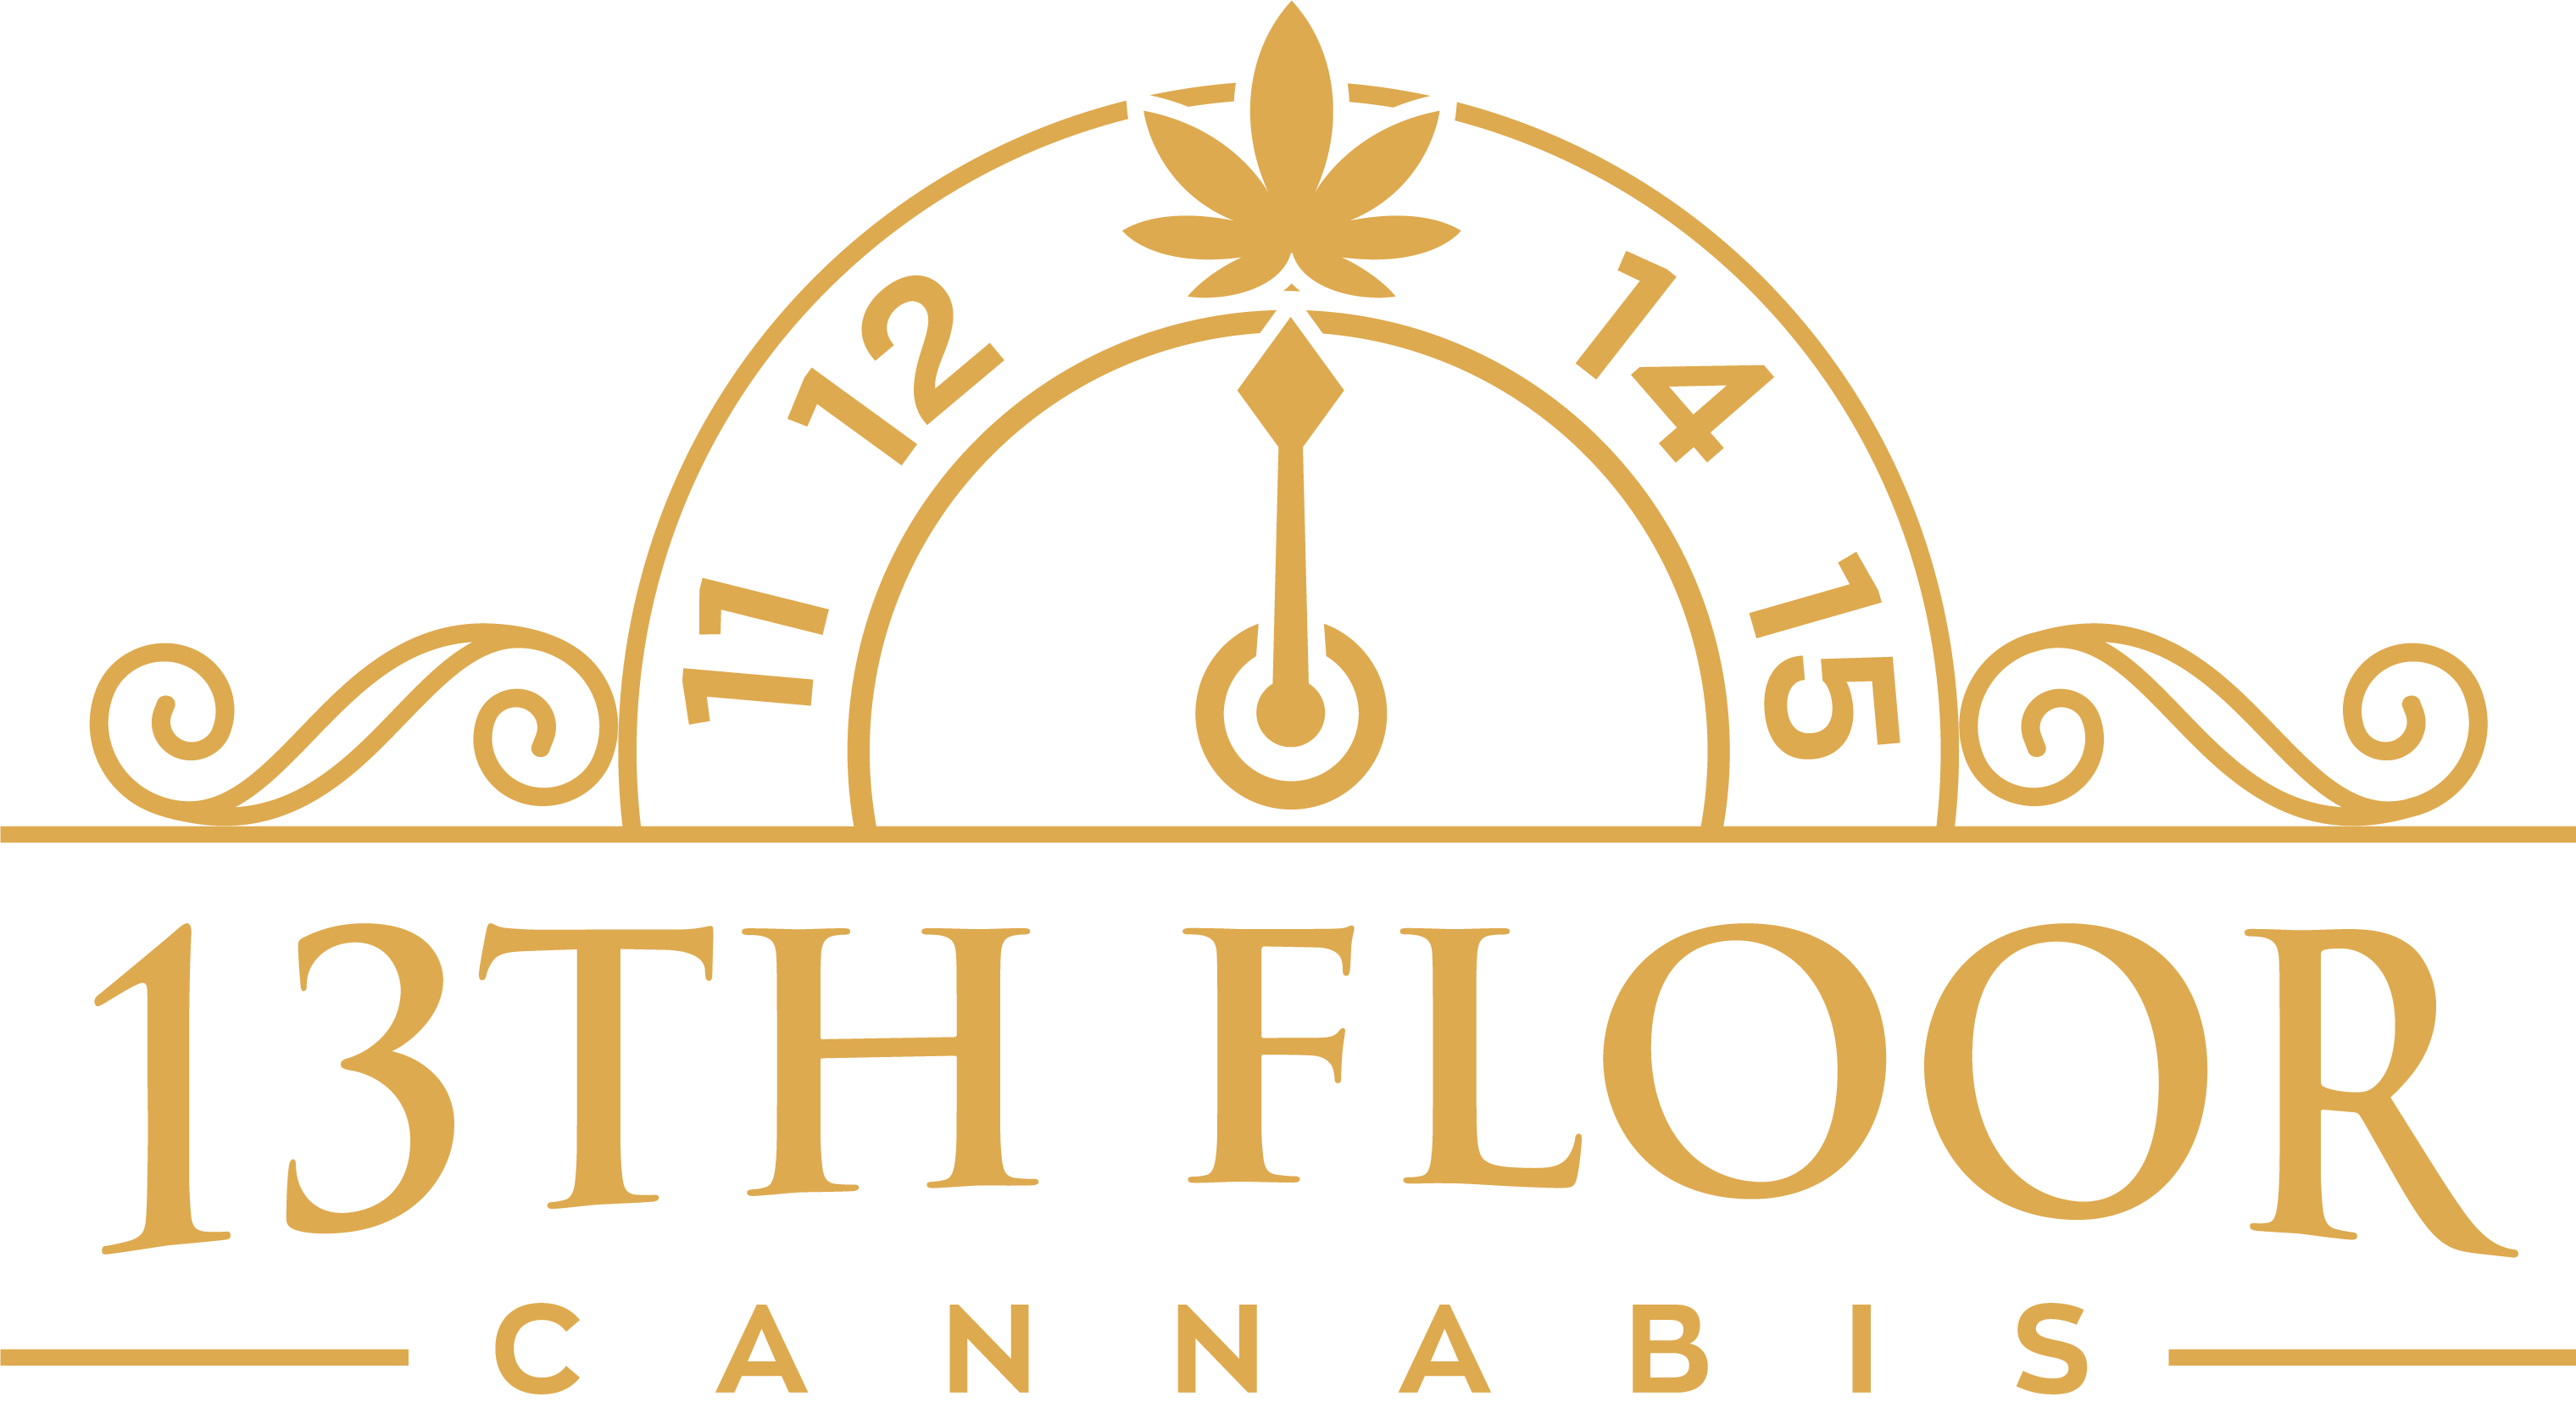 13thfloorcannabis logo